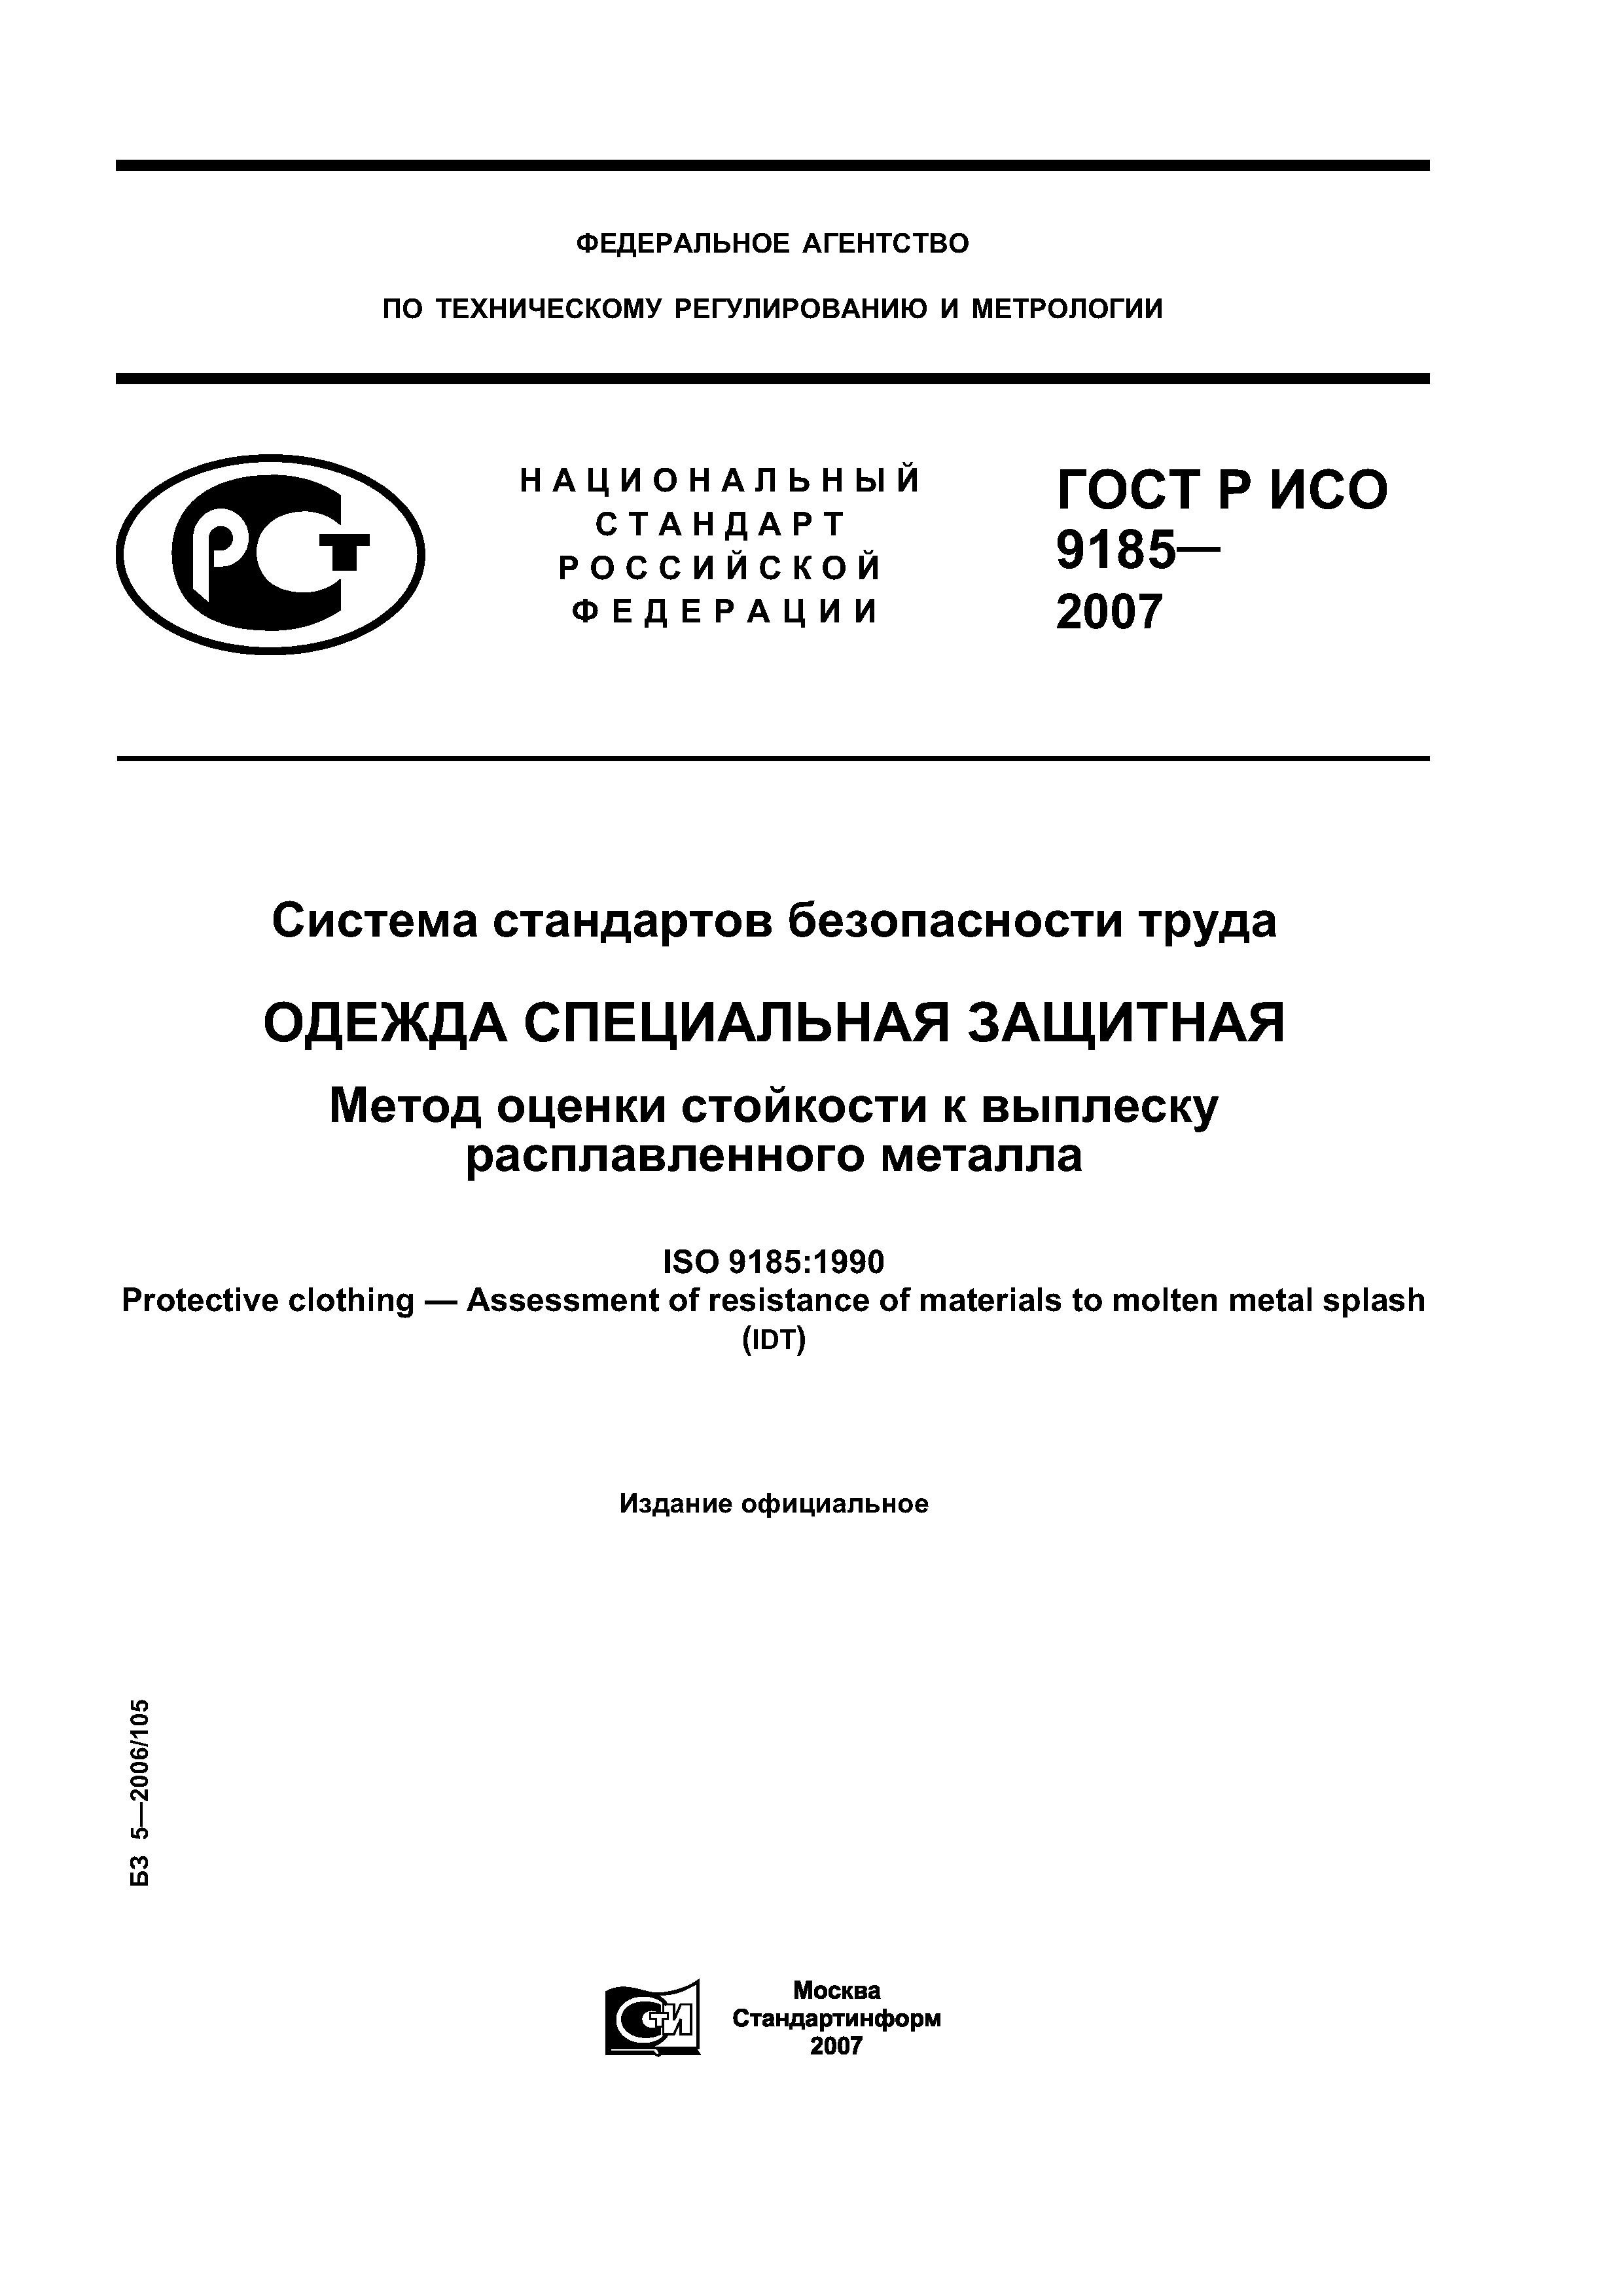 ГОСТ Р ИСО 9185-2007